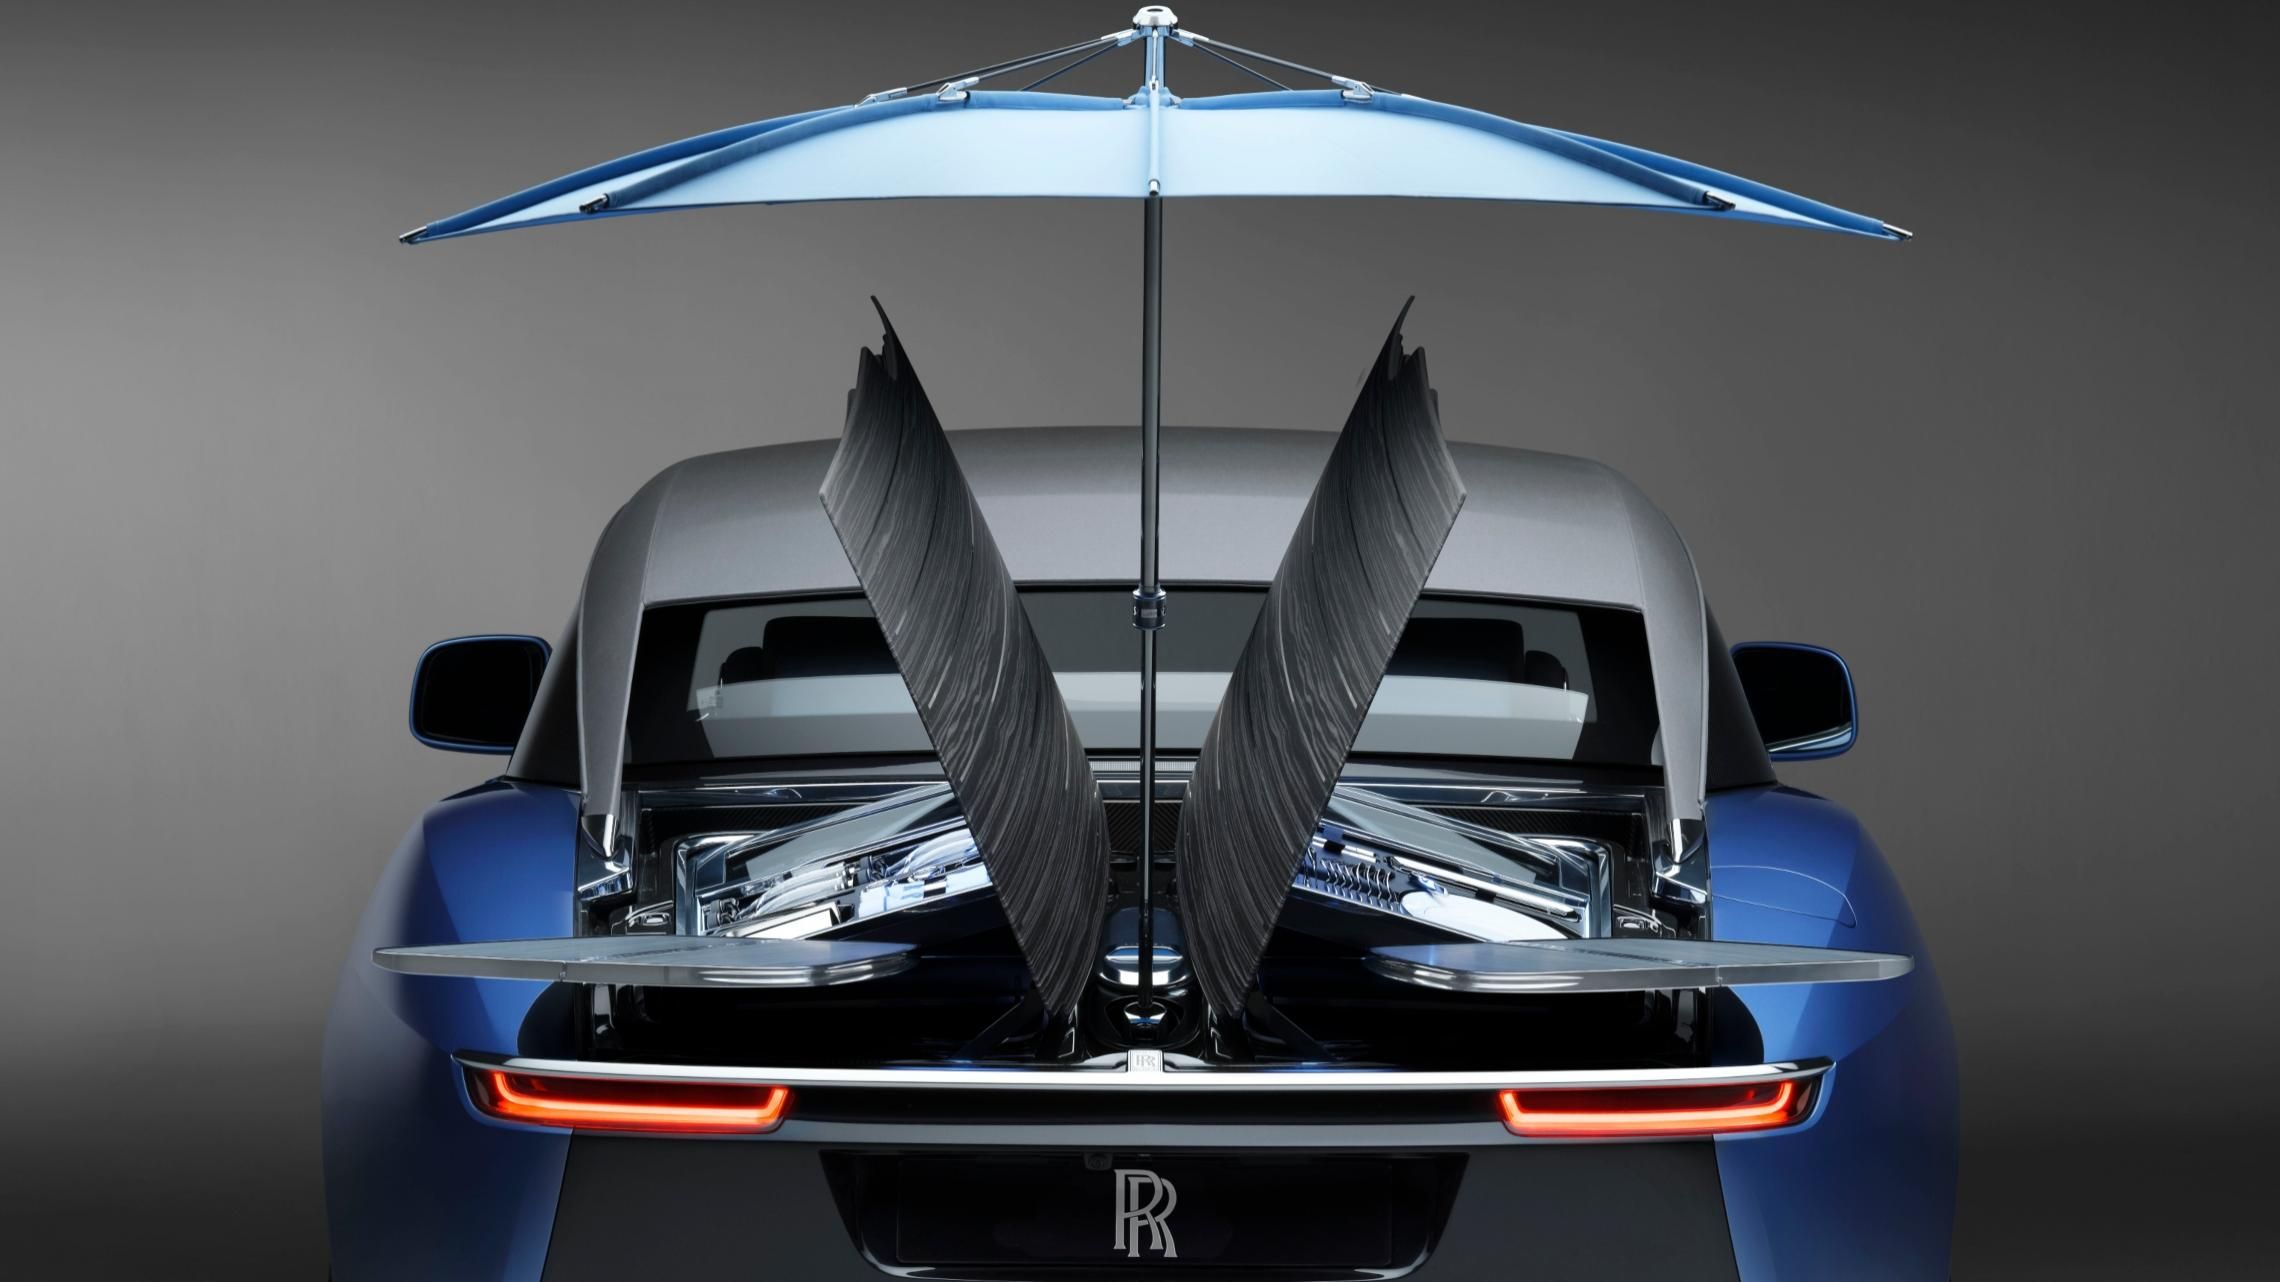 Rolls-Royce Boat Tail